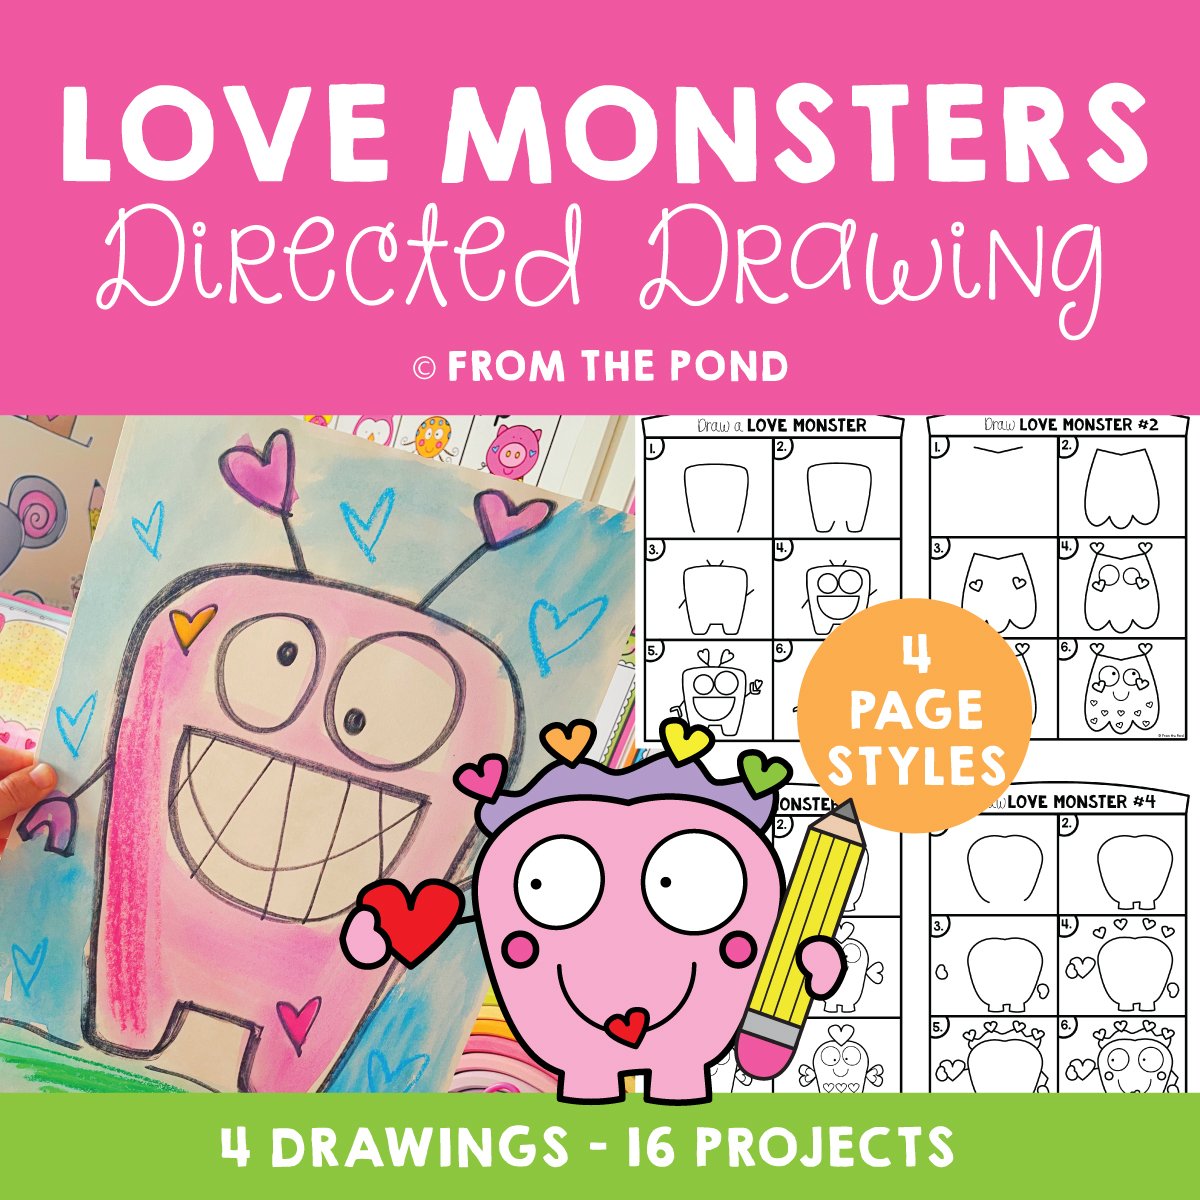 Love Monster Drawings